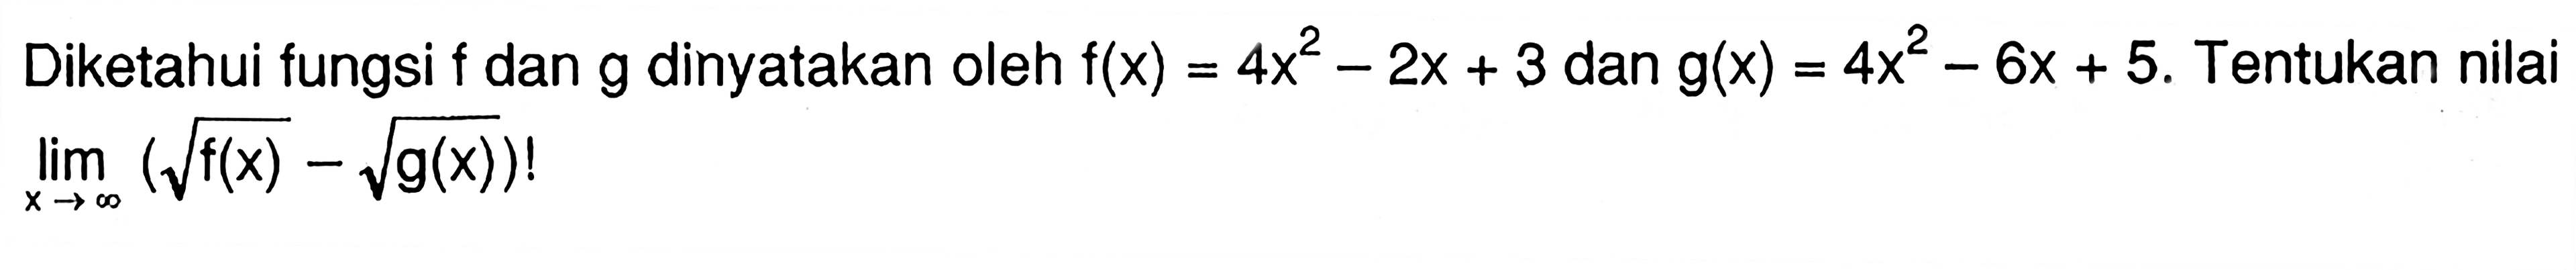 Diketahui fungsi f dan g dinyatakan oleh f(x)=4x^2-2x+3 dan g(x)=4x^2-6x+5. Tentukan nilai lim x->tak hingga (akar(f(x))-akar(g(x))!